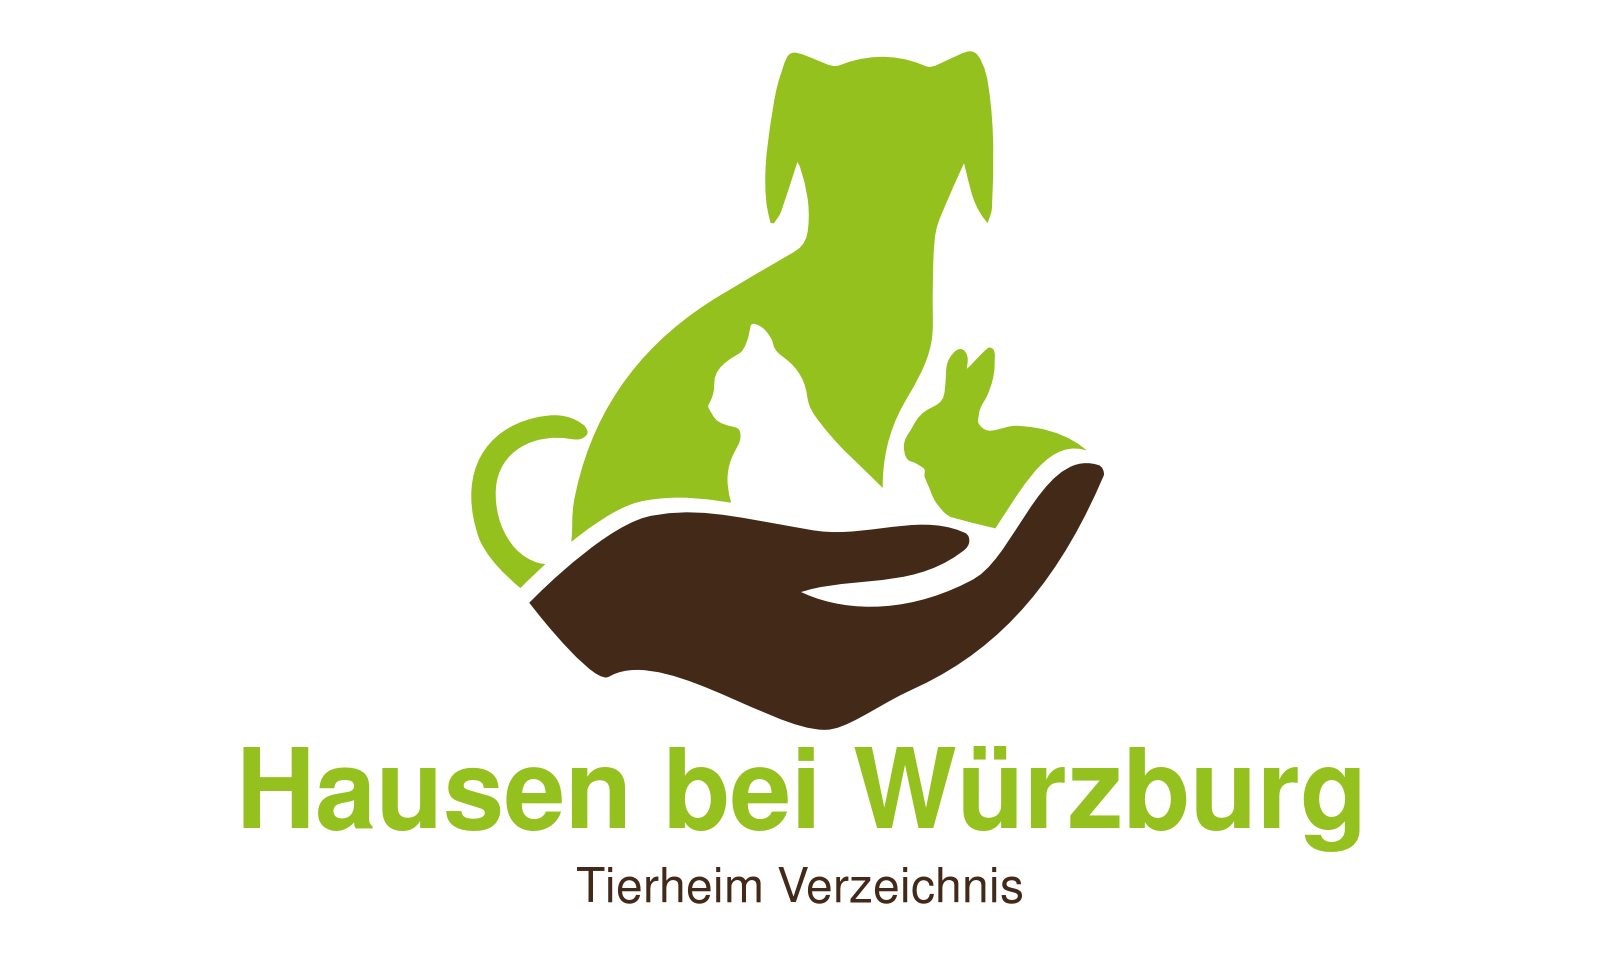 Tierheim Hausen bei Würzburg 🦅 Informationsportal Tierheim Verzeichnis